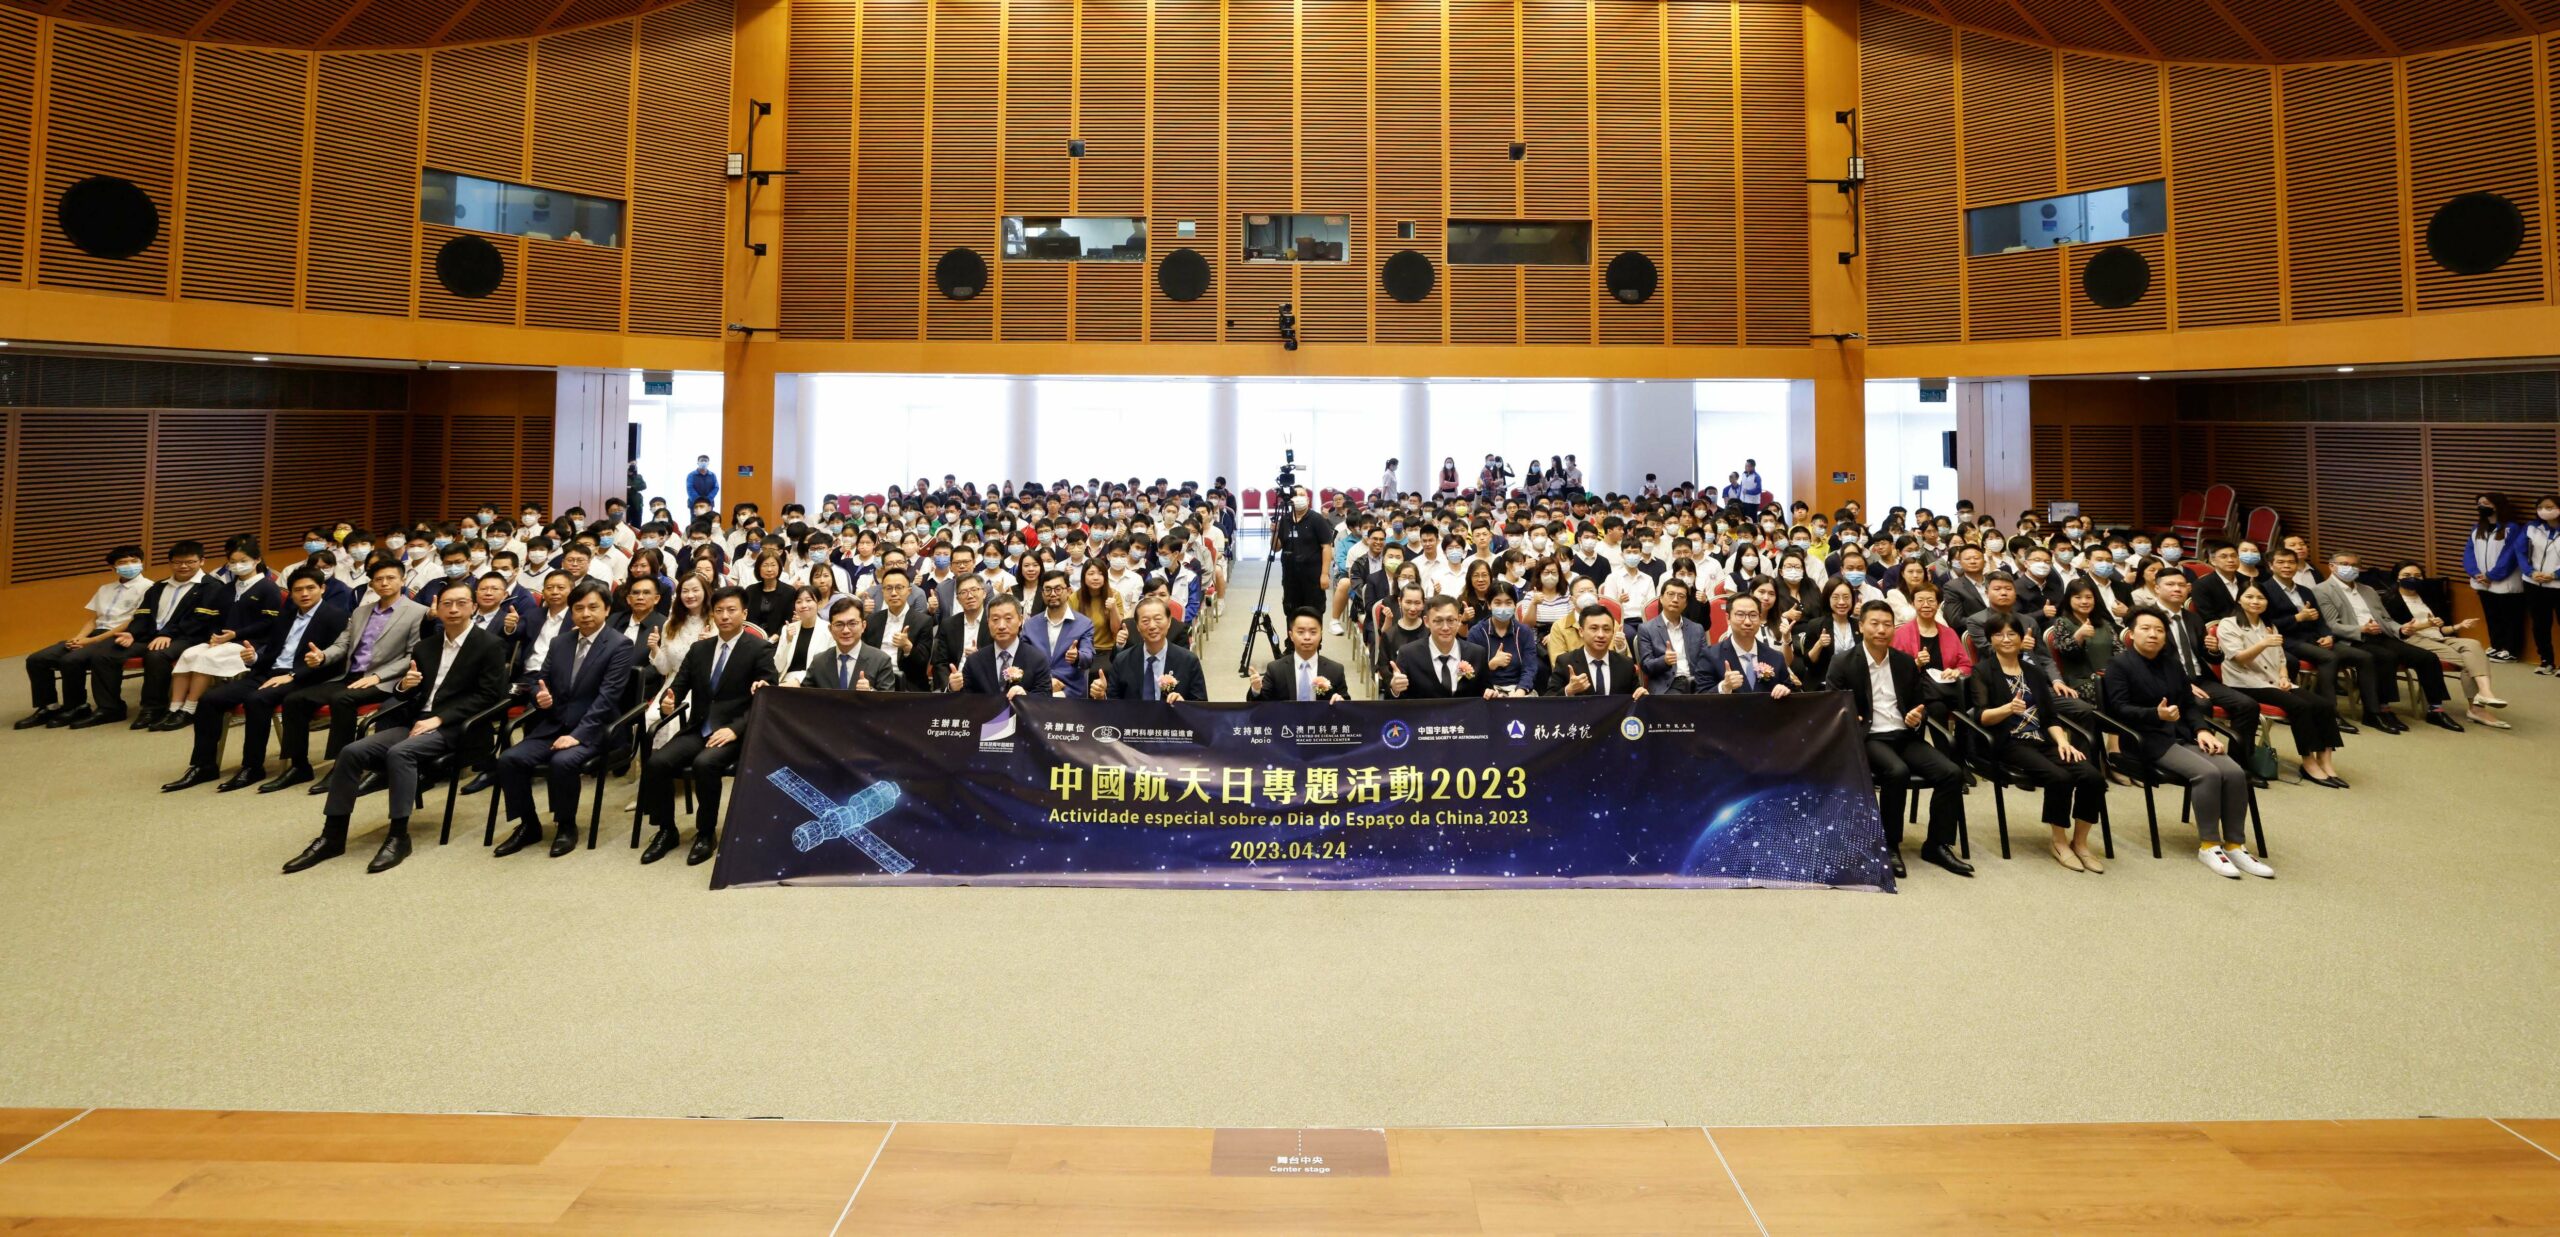 DSEDJ | Centro de Ciência celebrou o “Dia do Espaço da China”